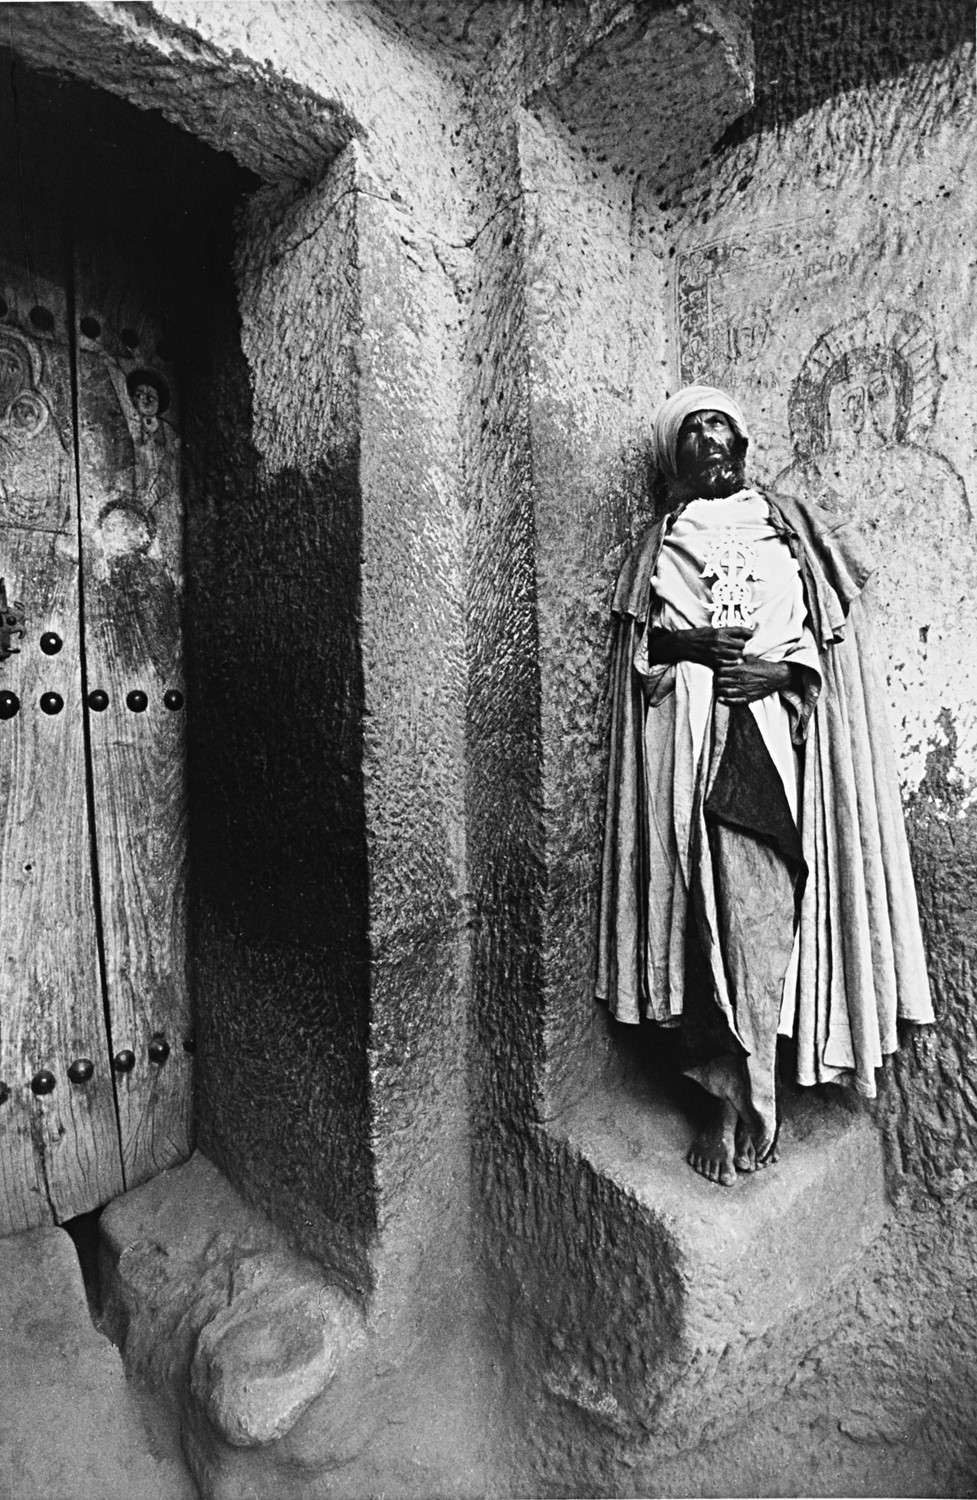 Эфиопия, 1973. Фотограф Марио Де Бьязи